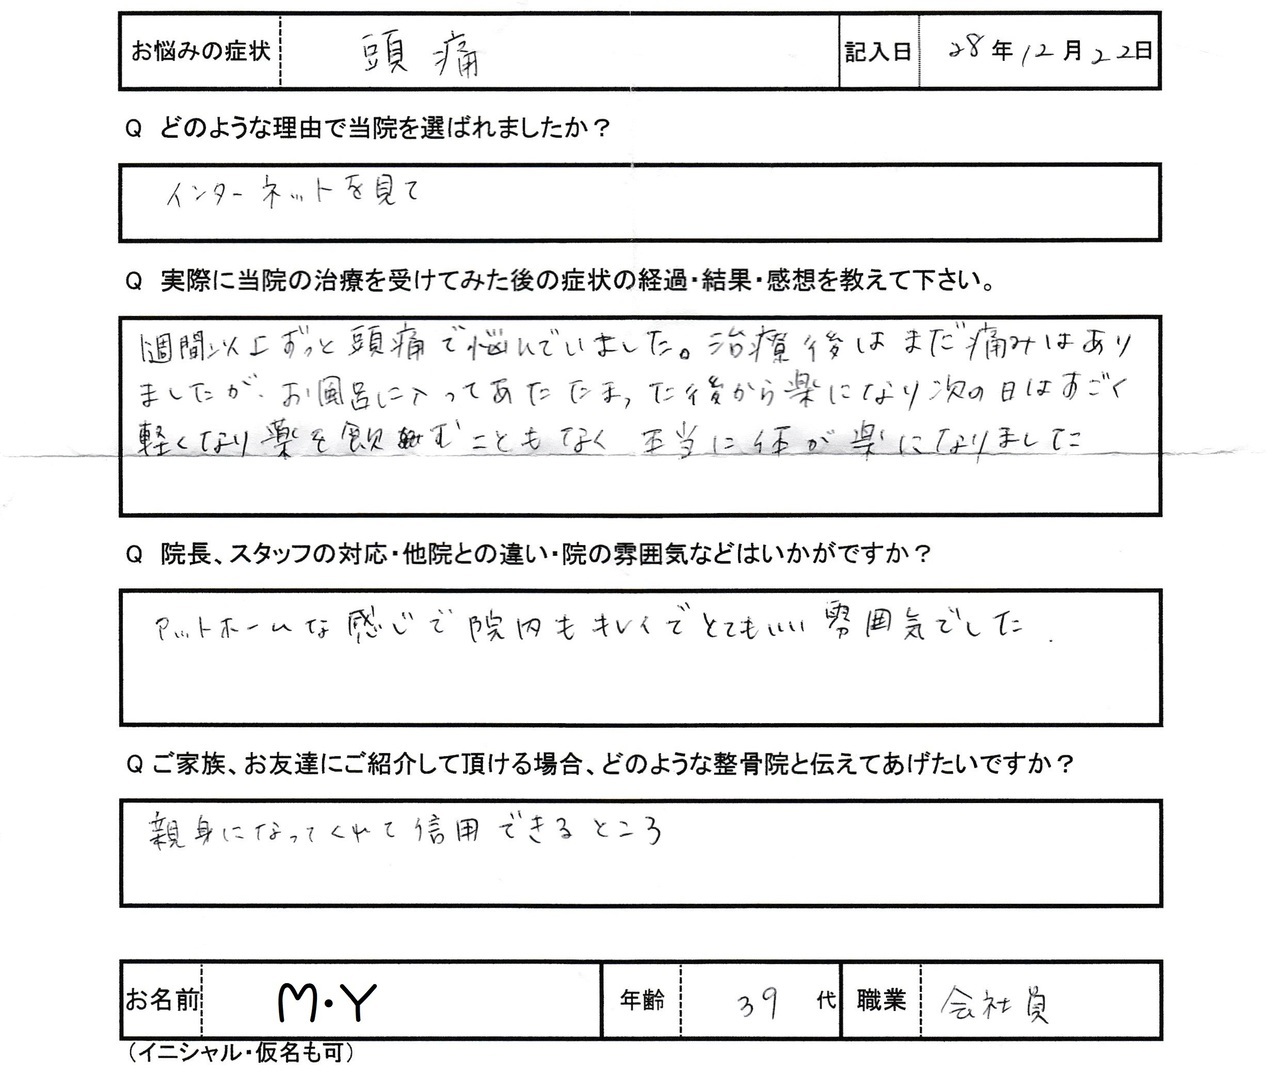 M・Yさんアンケート用紙